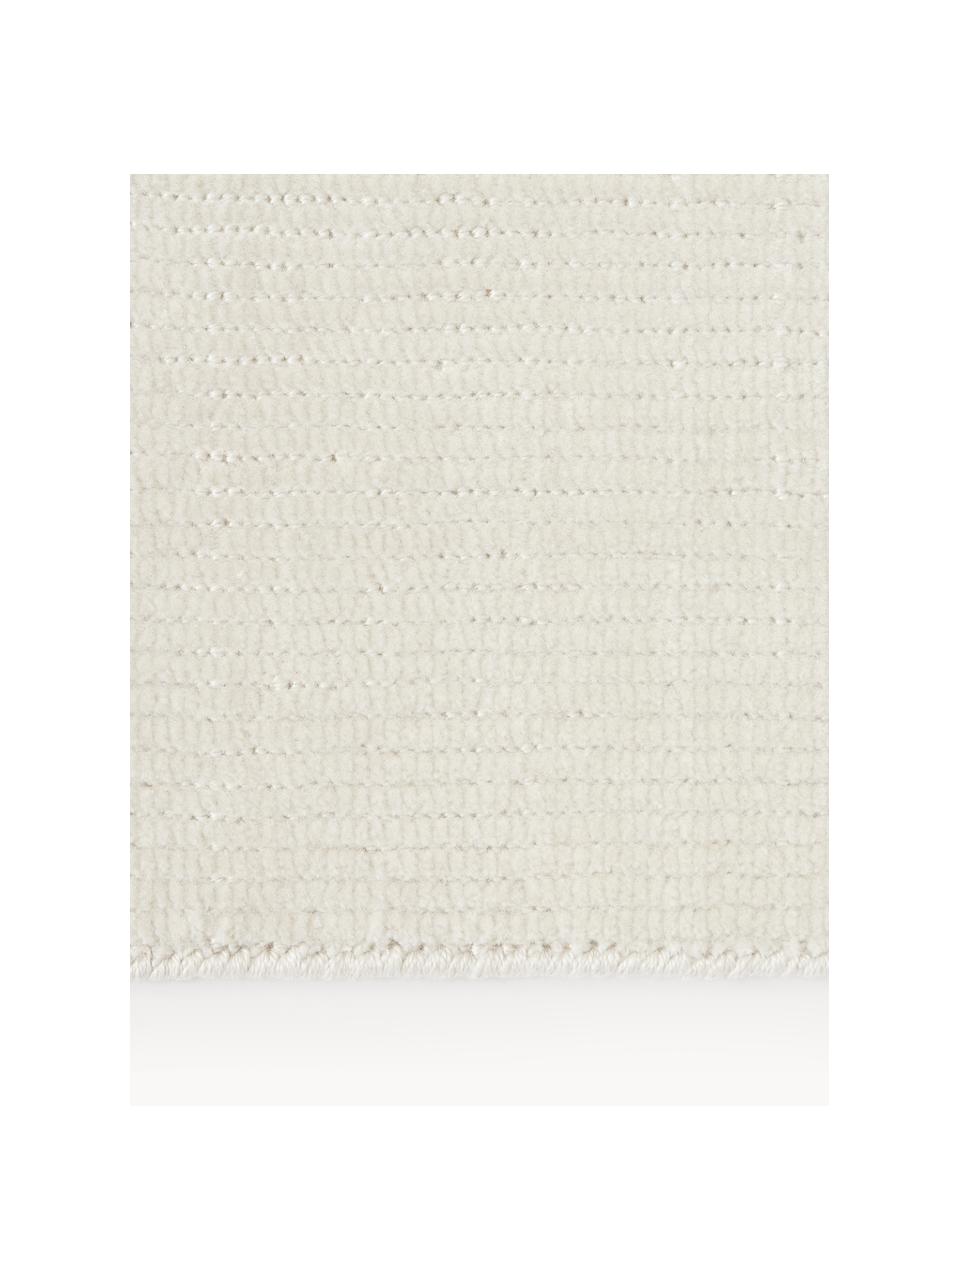 Handgewebter Kurzflor-Teppich Willow, 100% Polyester, GRS-zertifiziert, Cremeweiss, B 120 x L 180 cm (Grösse S)